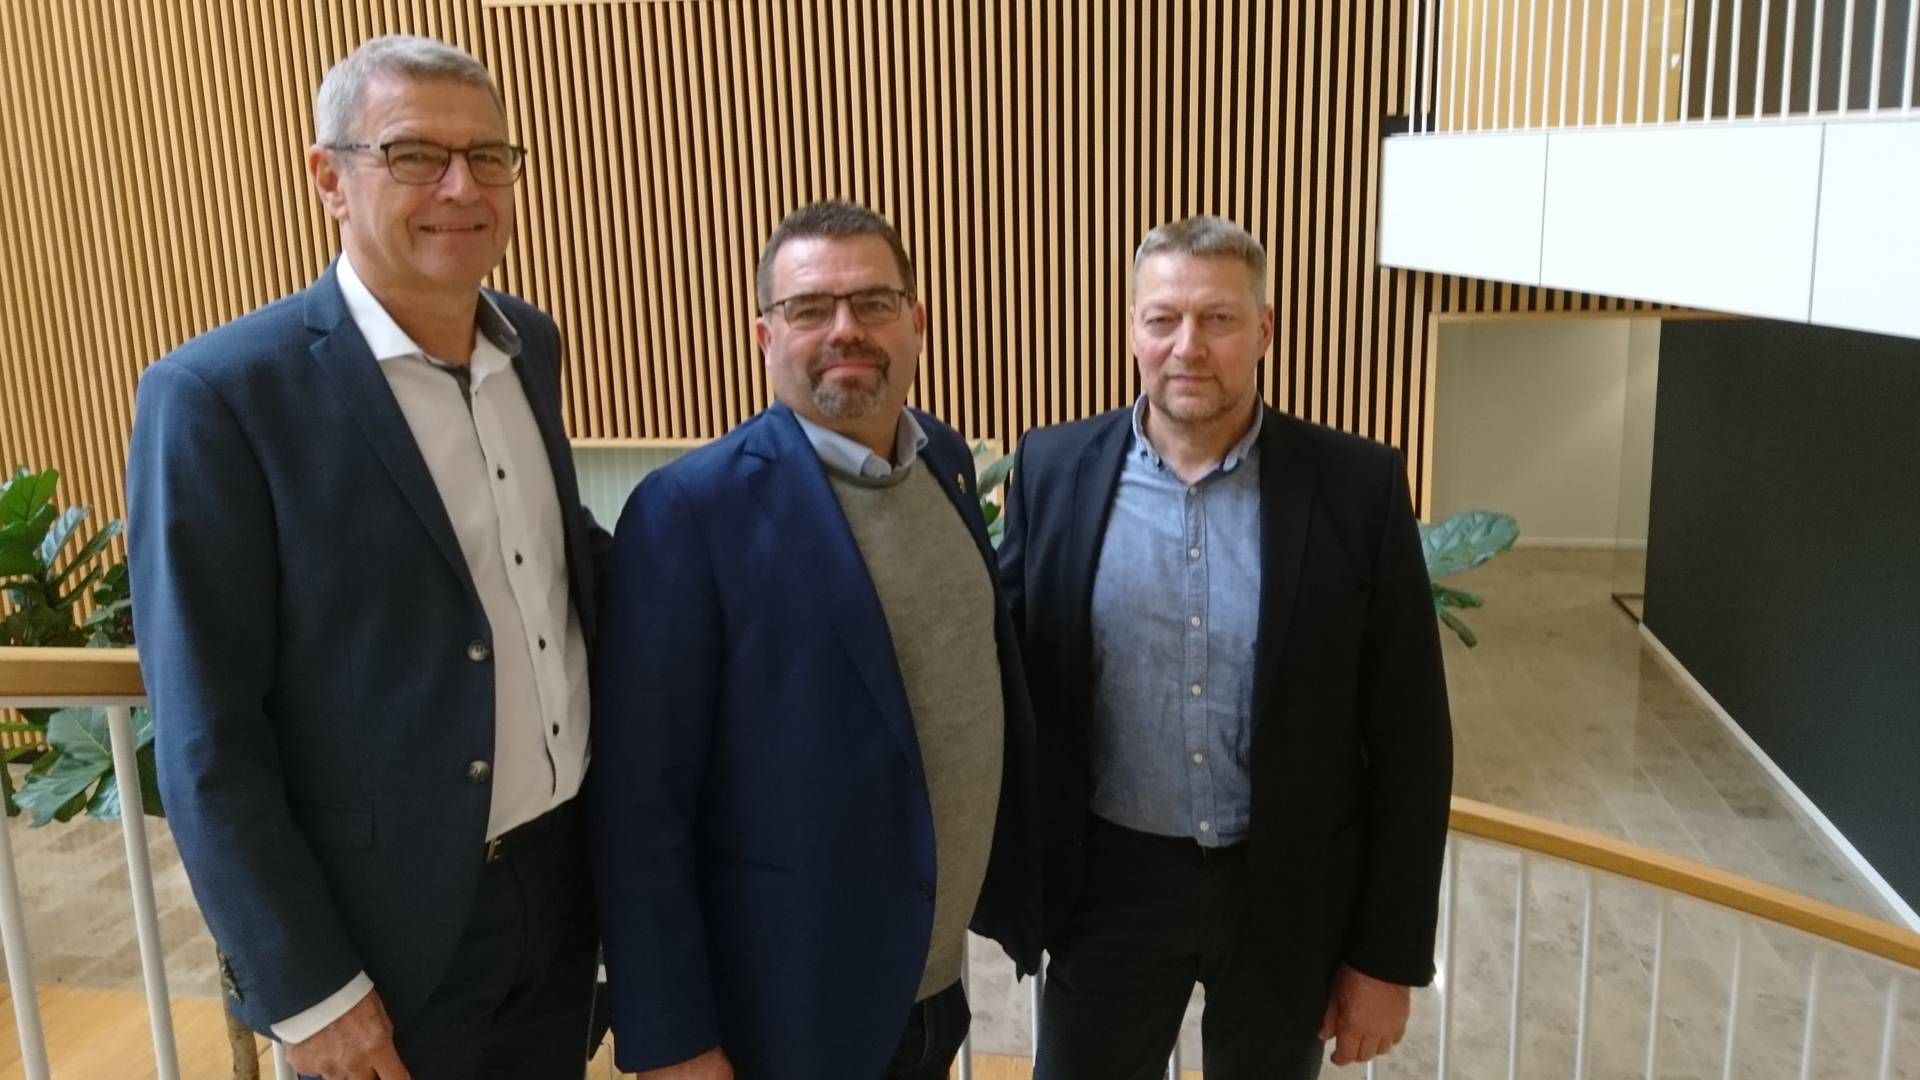 Fra venstre: Jan Winther, direktør i LMO, Torben Lyngsøe Povlsen, formand for Centrovice og Nis Kristian Hjort, formand for LMO. | Foto: Katrine Stampe, Watch Medier